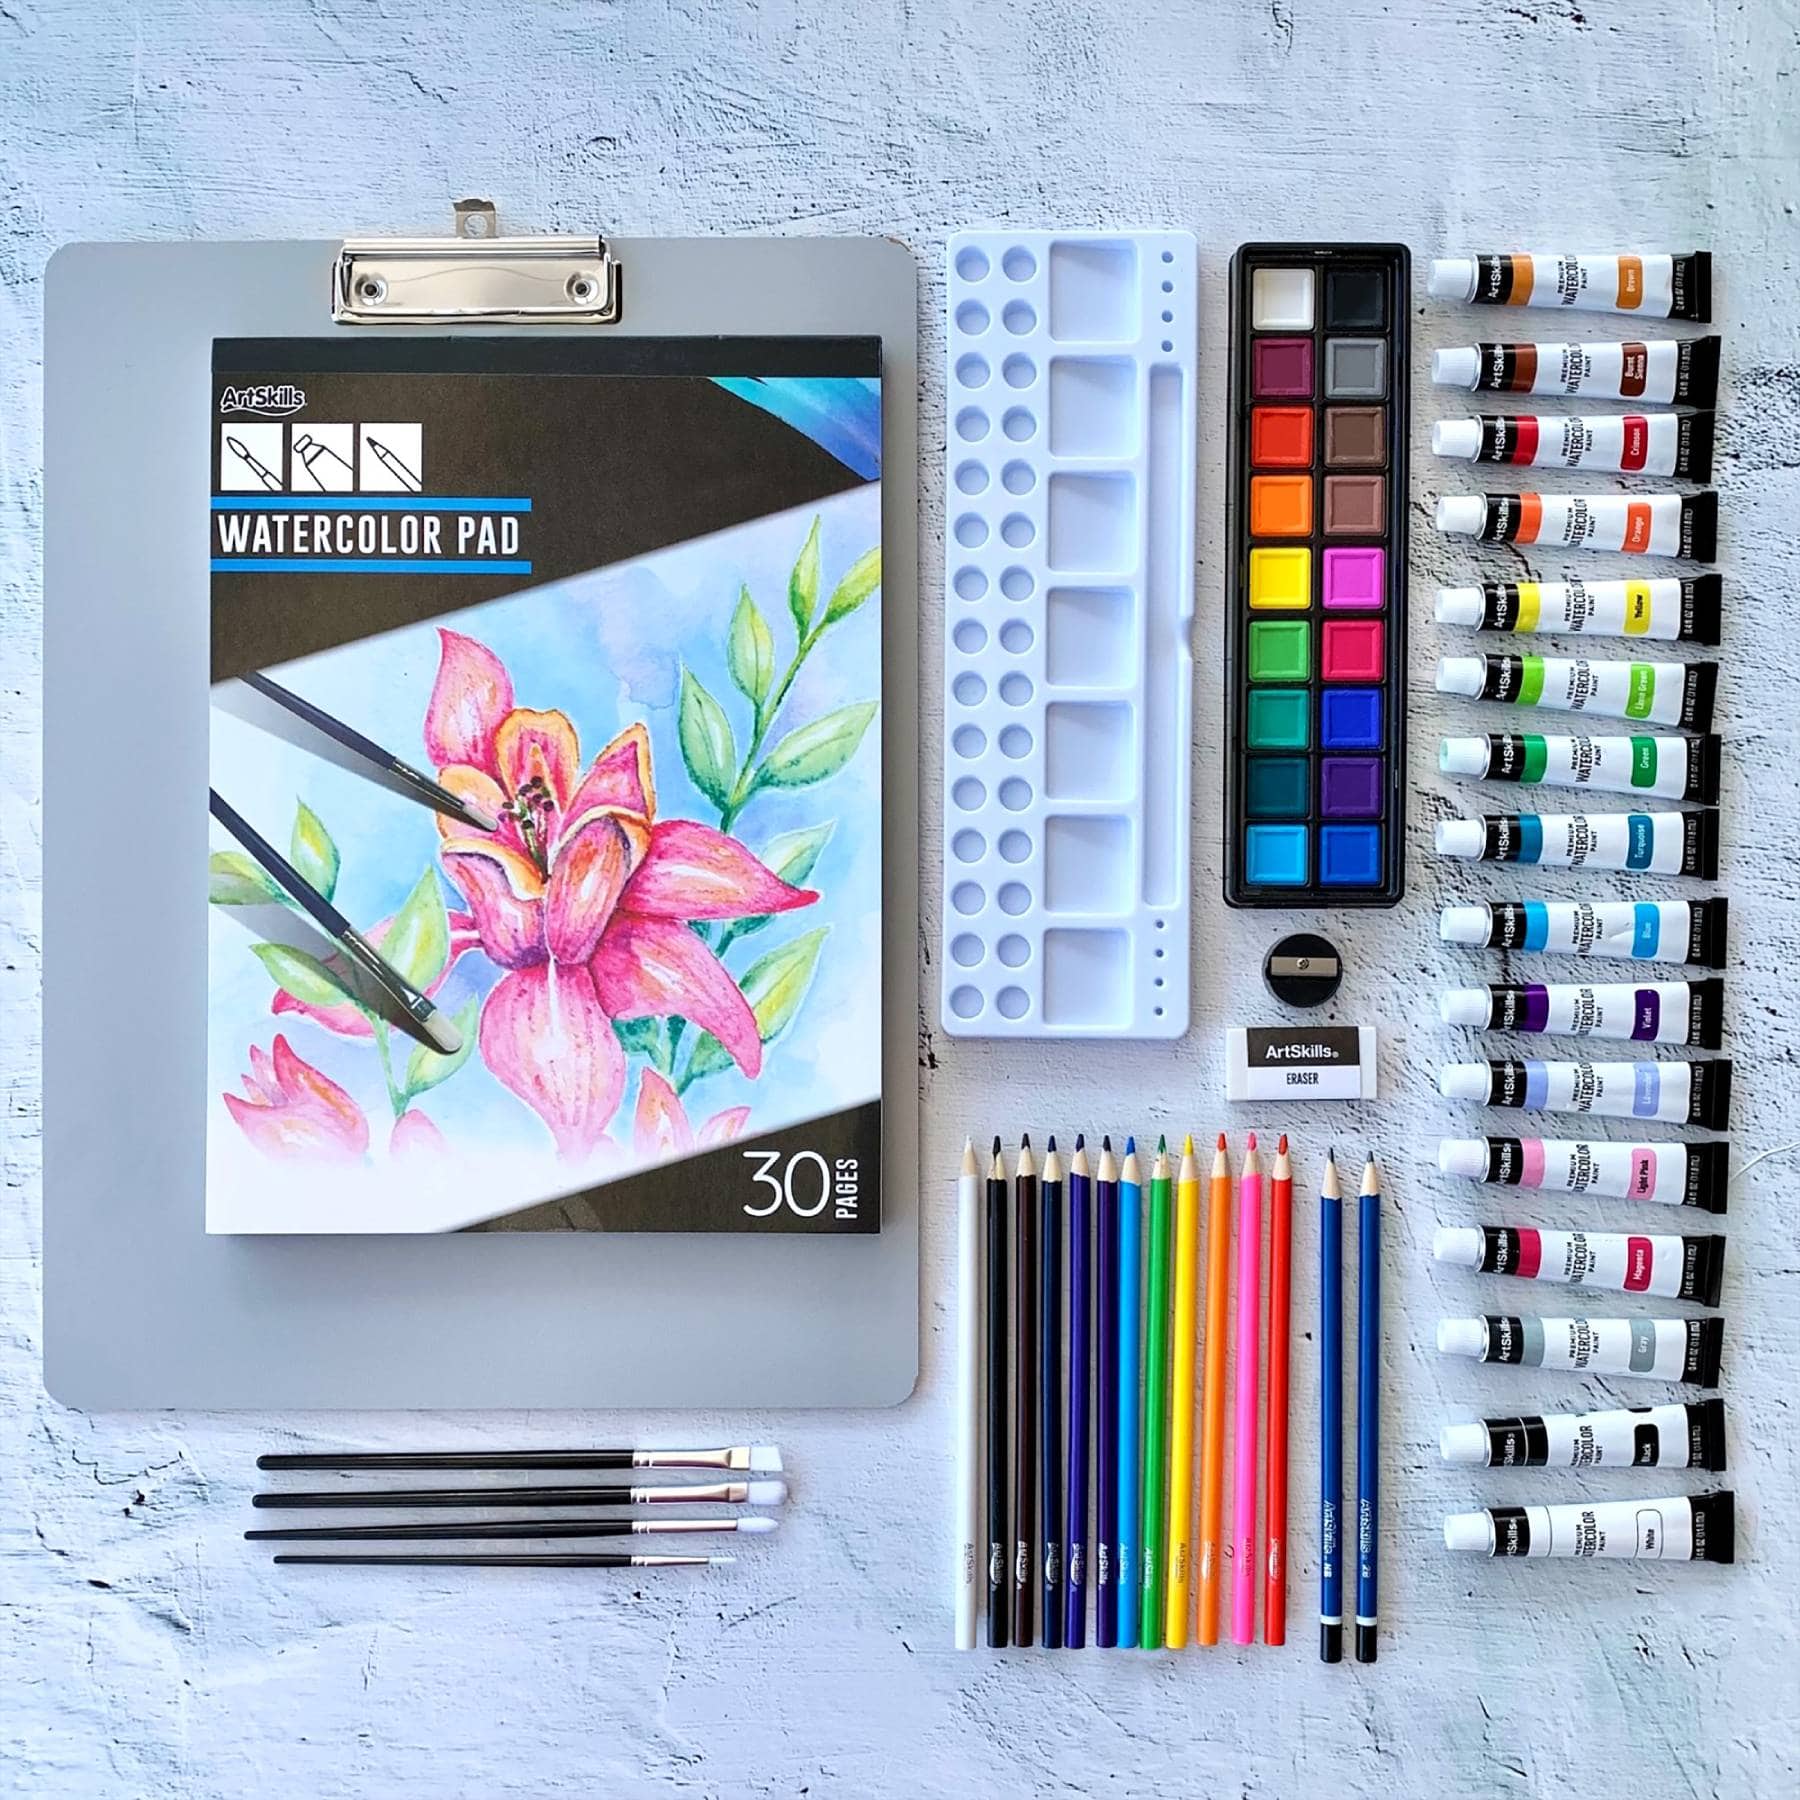 ArtSkills&#xAE; 57 Piece Complete Watercolor Set